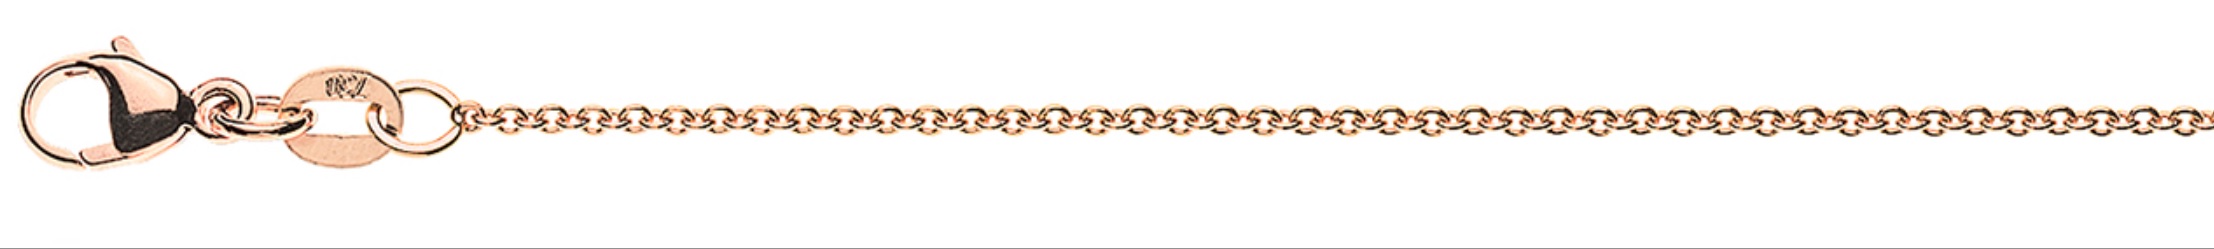 AURONOS Prestige Bracelet ancre rond or rose 18K 19cm 1.3mm